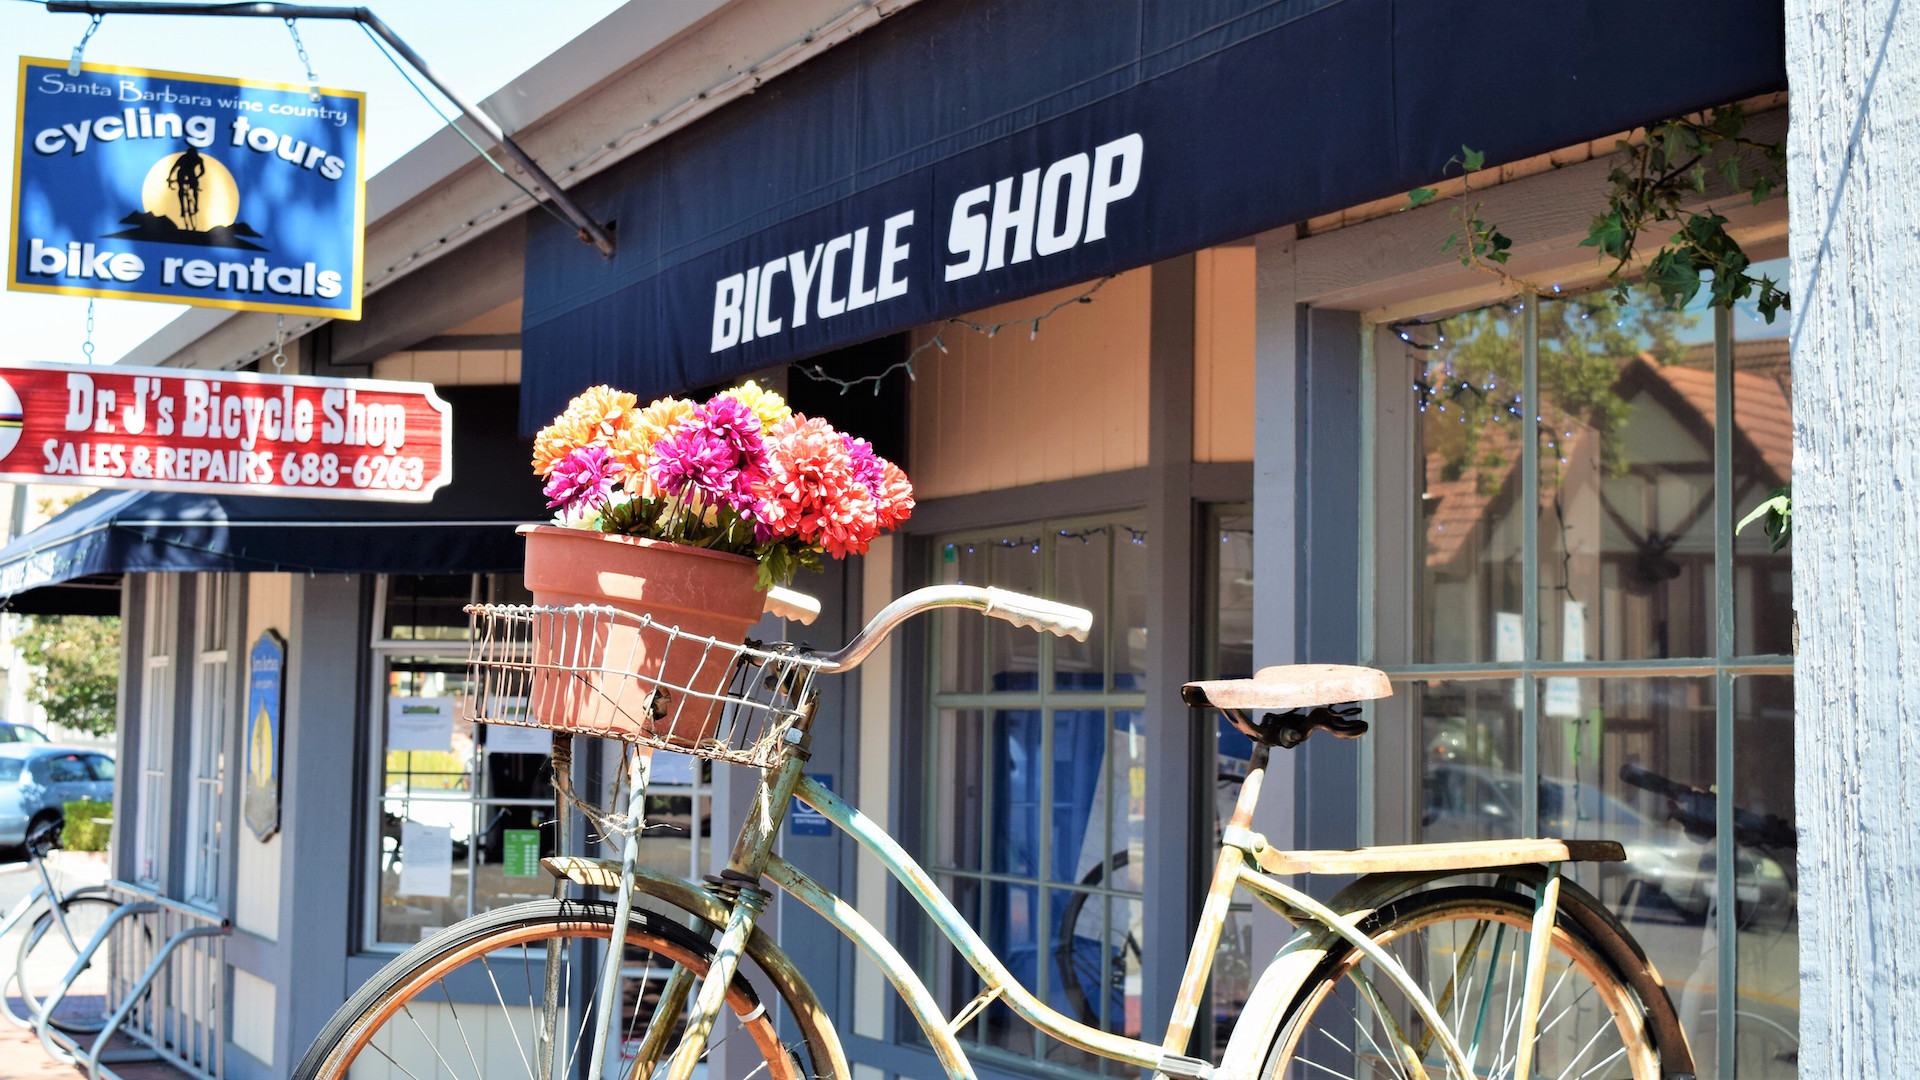 Dr. Js Bicycle Shop